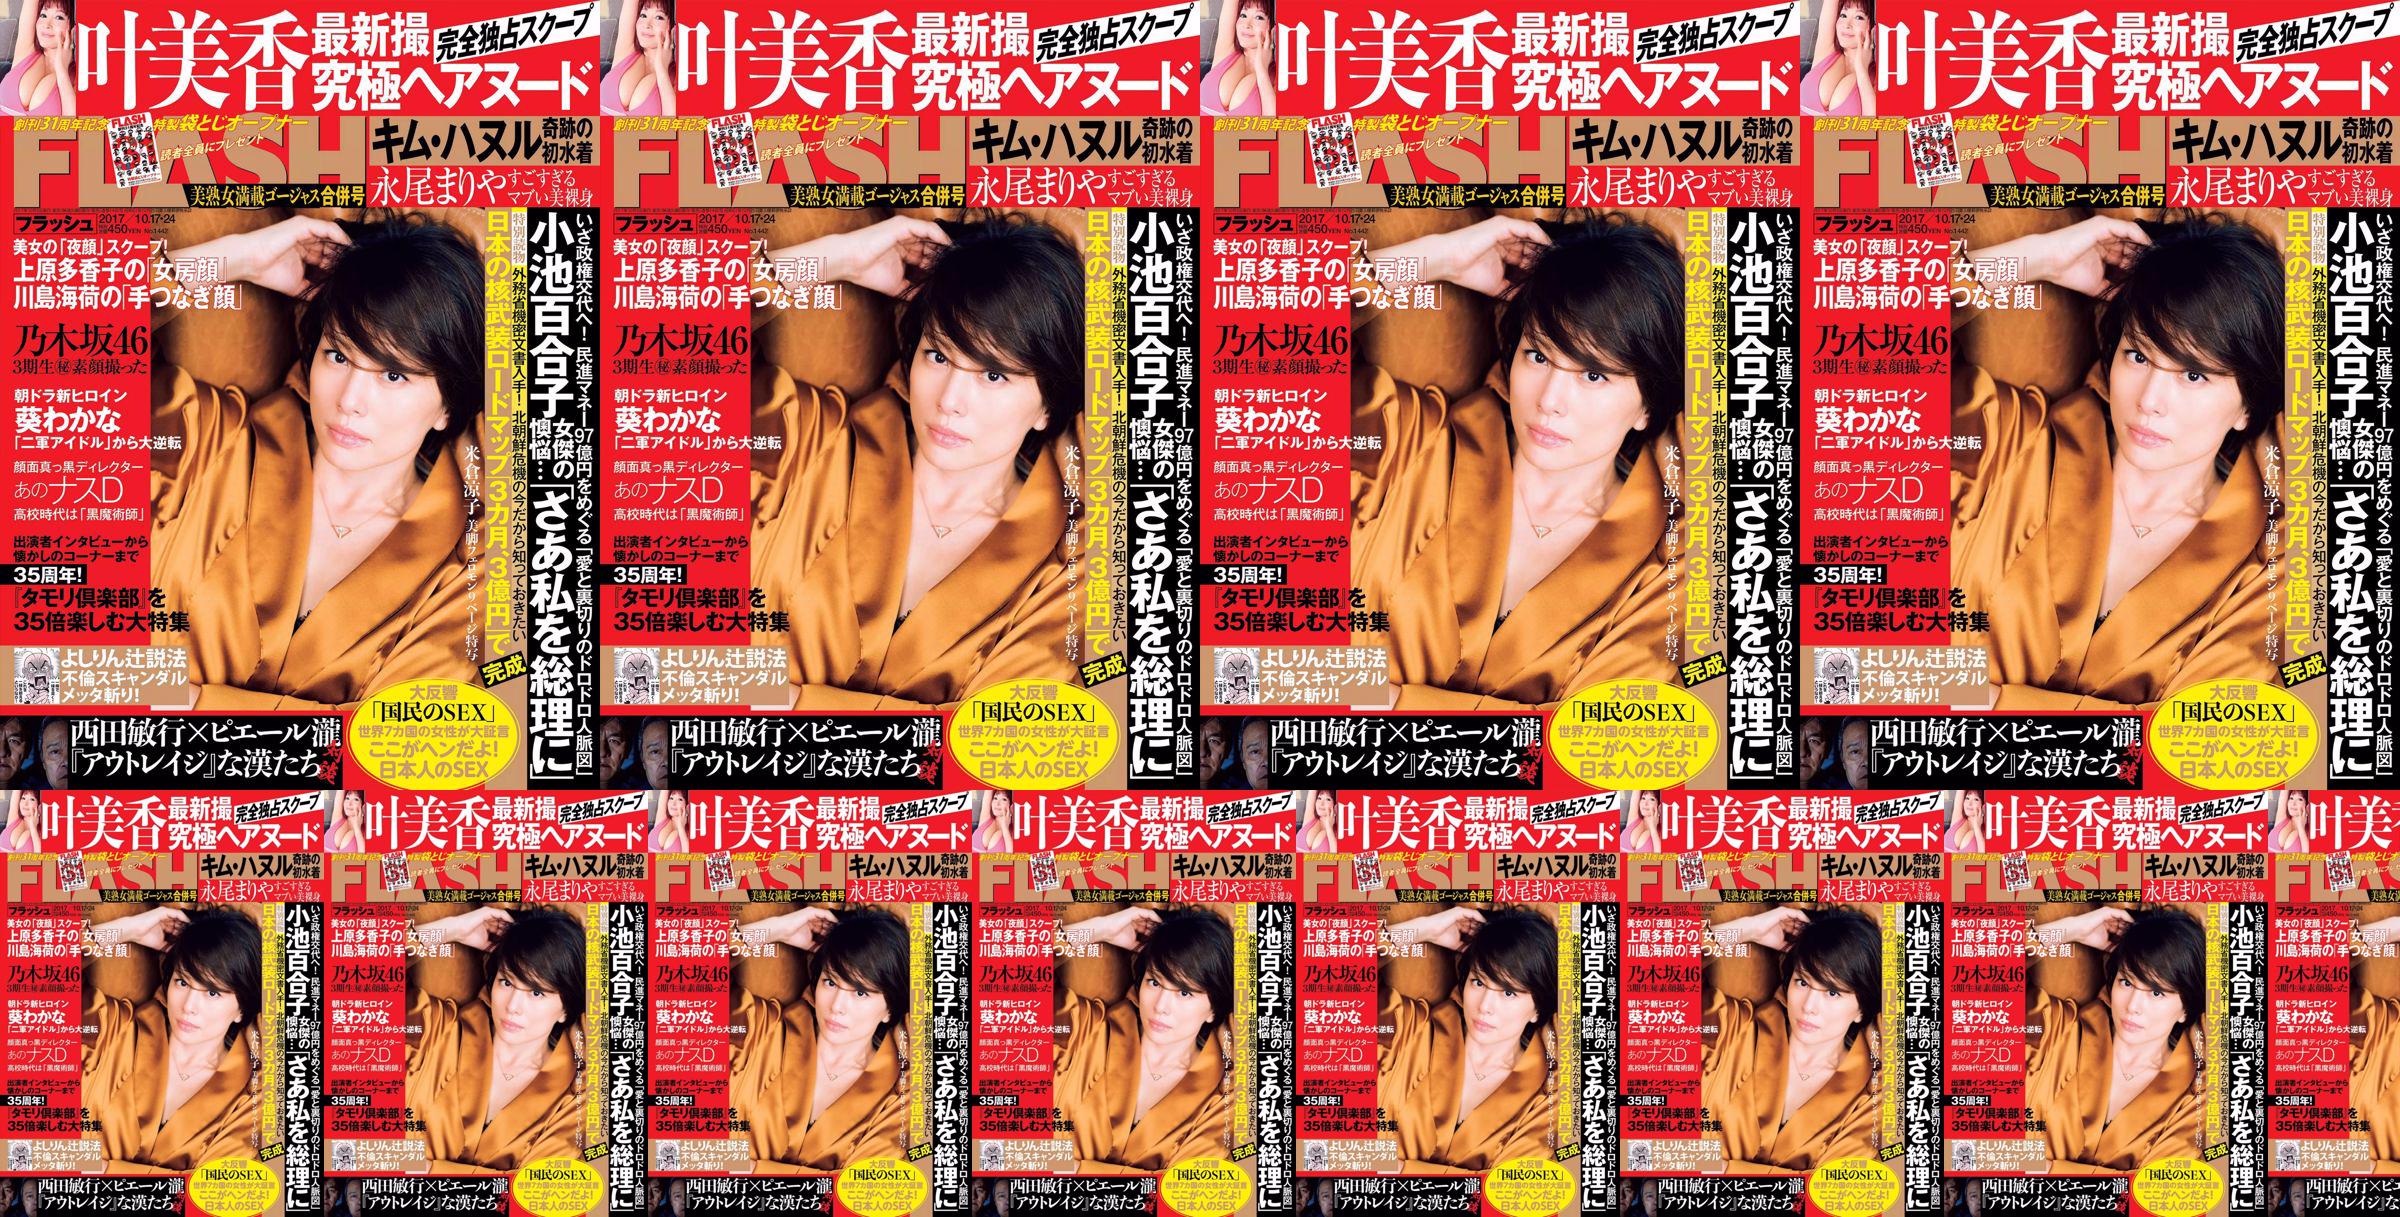 [FLASH] Yonekura Ryoko Ye Meixiang Tachibana Blumen Rin Nagao Rika 2017.10.17-24 Fotomagazin No.266e43 Seite 2